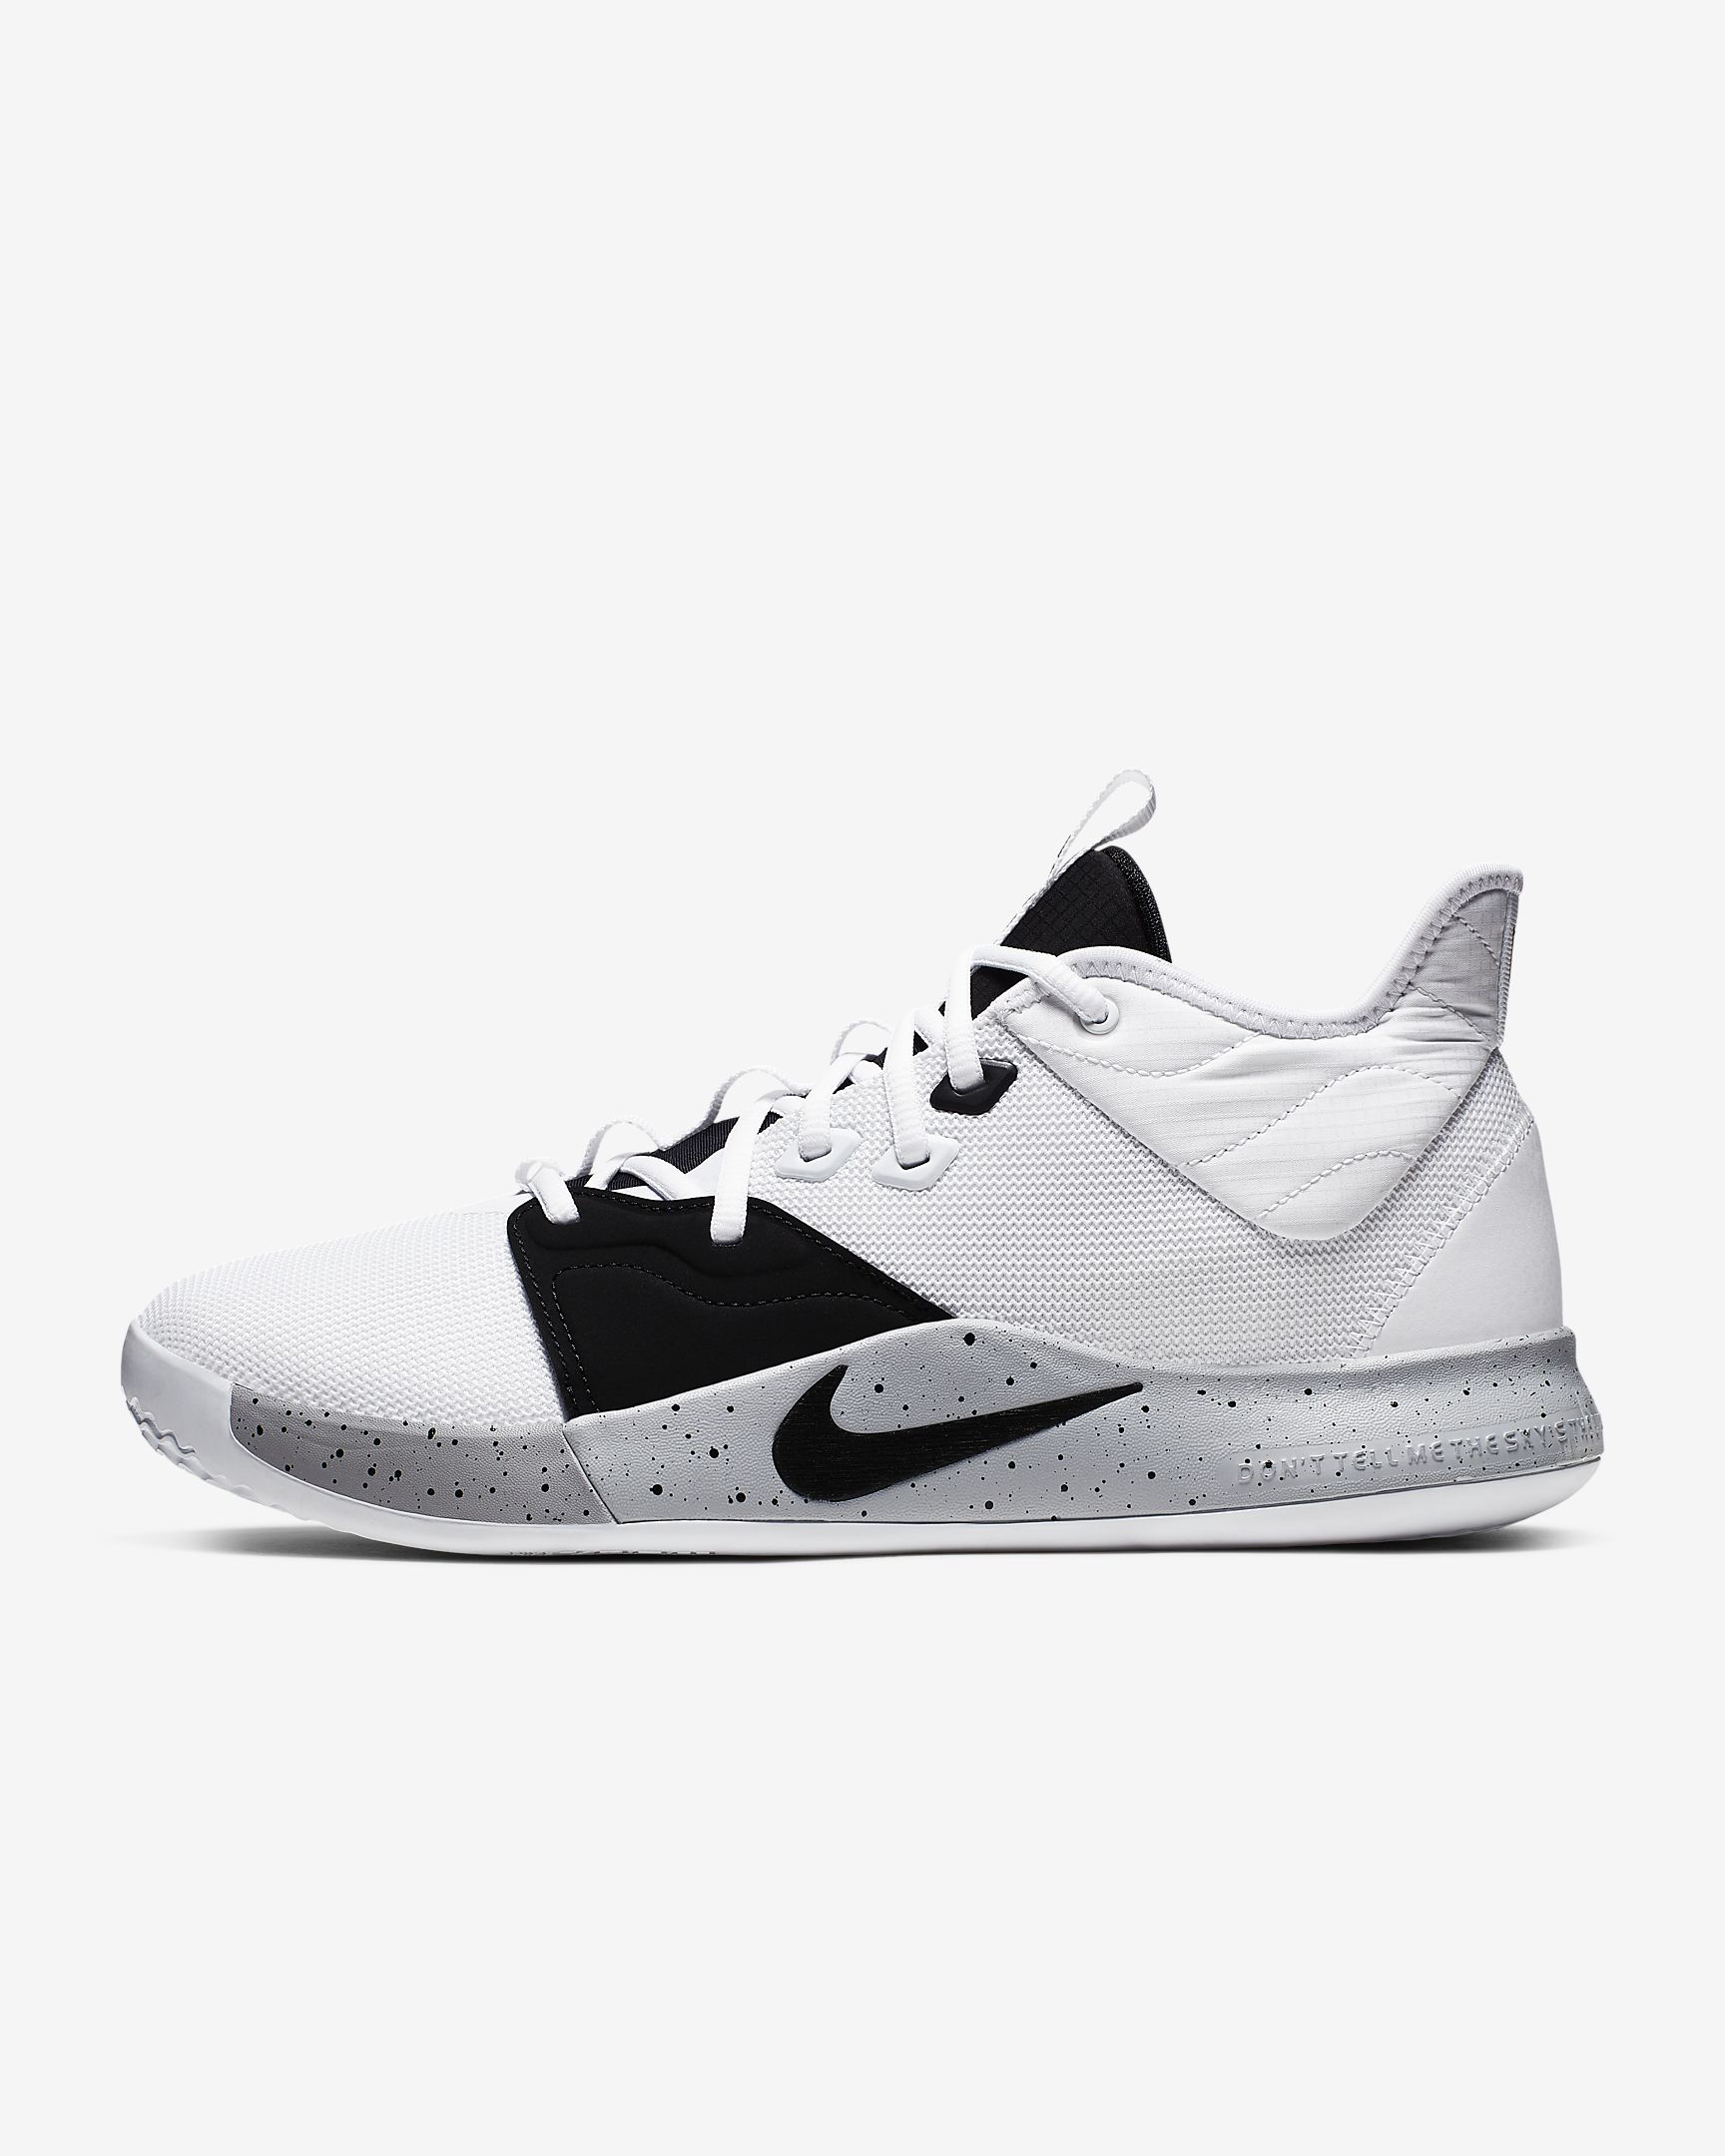 Nike PG 3 - OUT NOW - Price: $110-$120, NIKEID $130 - LAC BOUND | NikeTalk